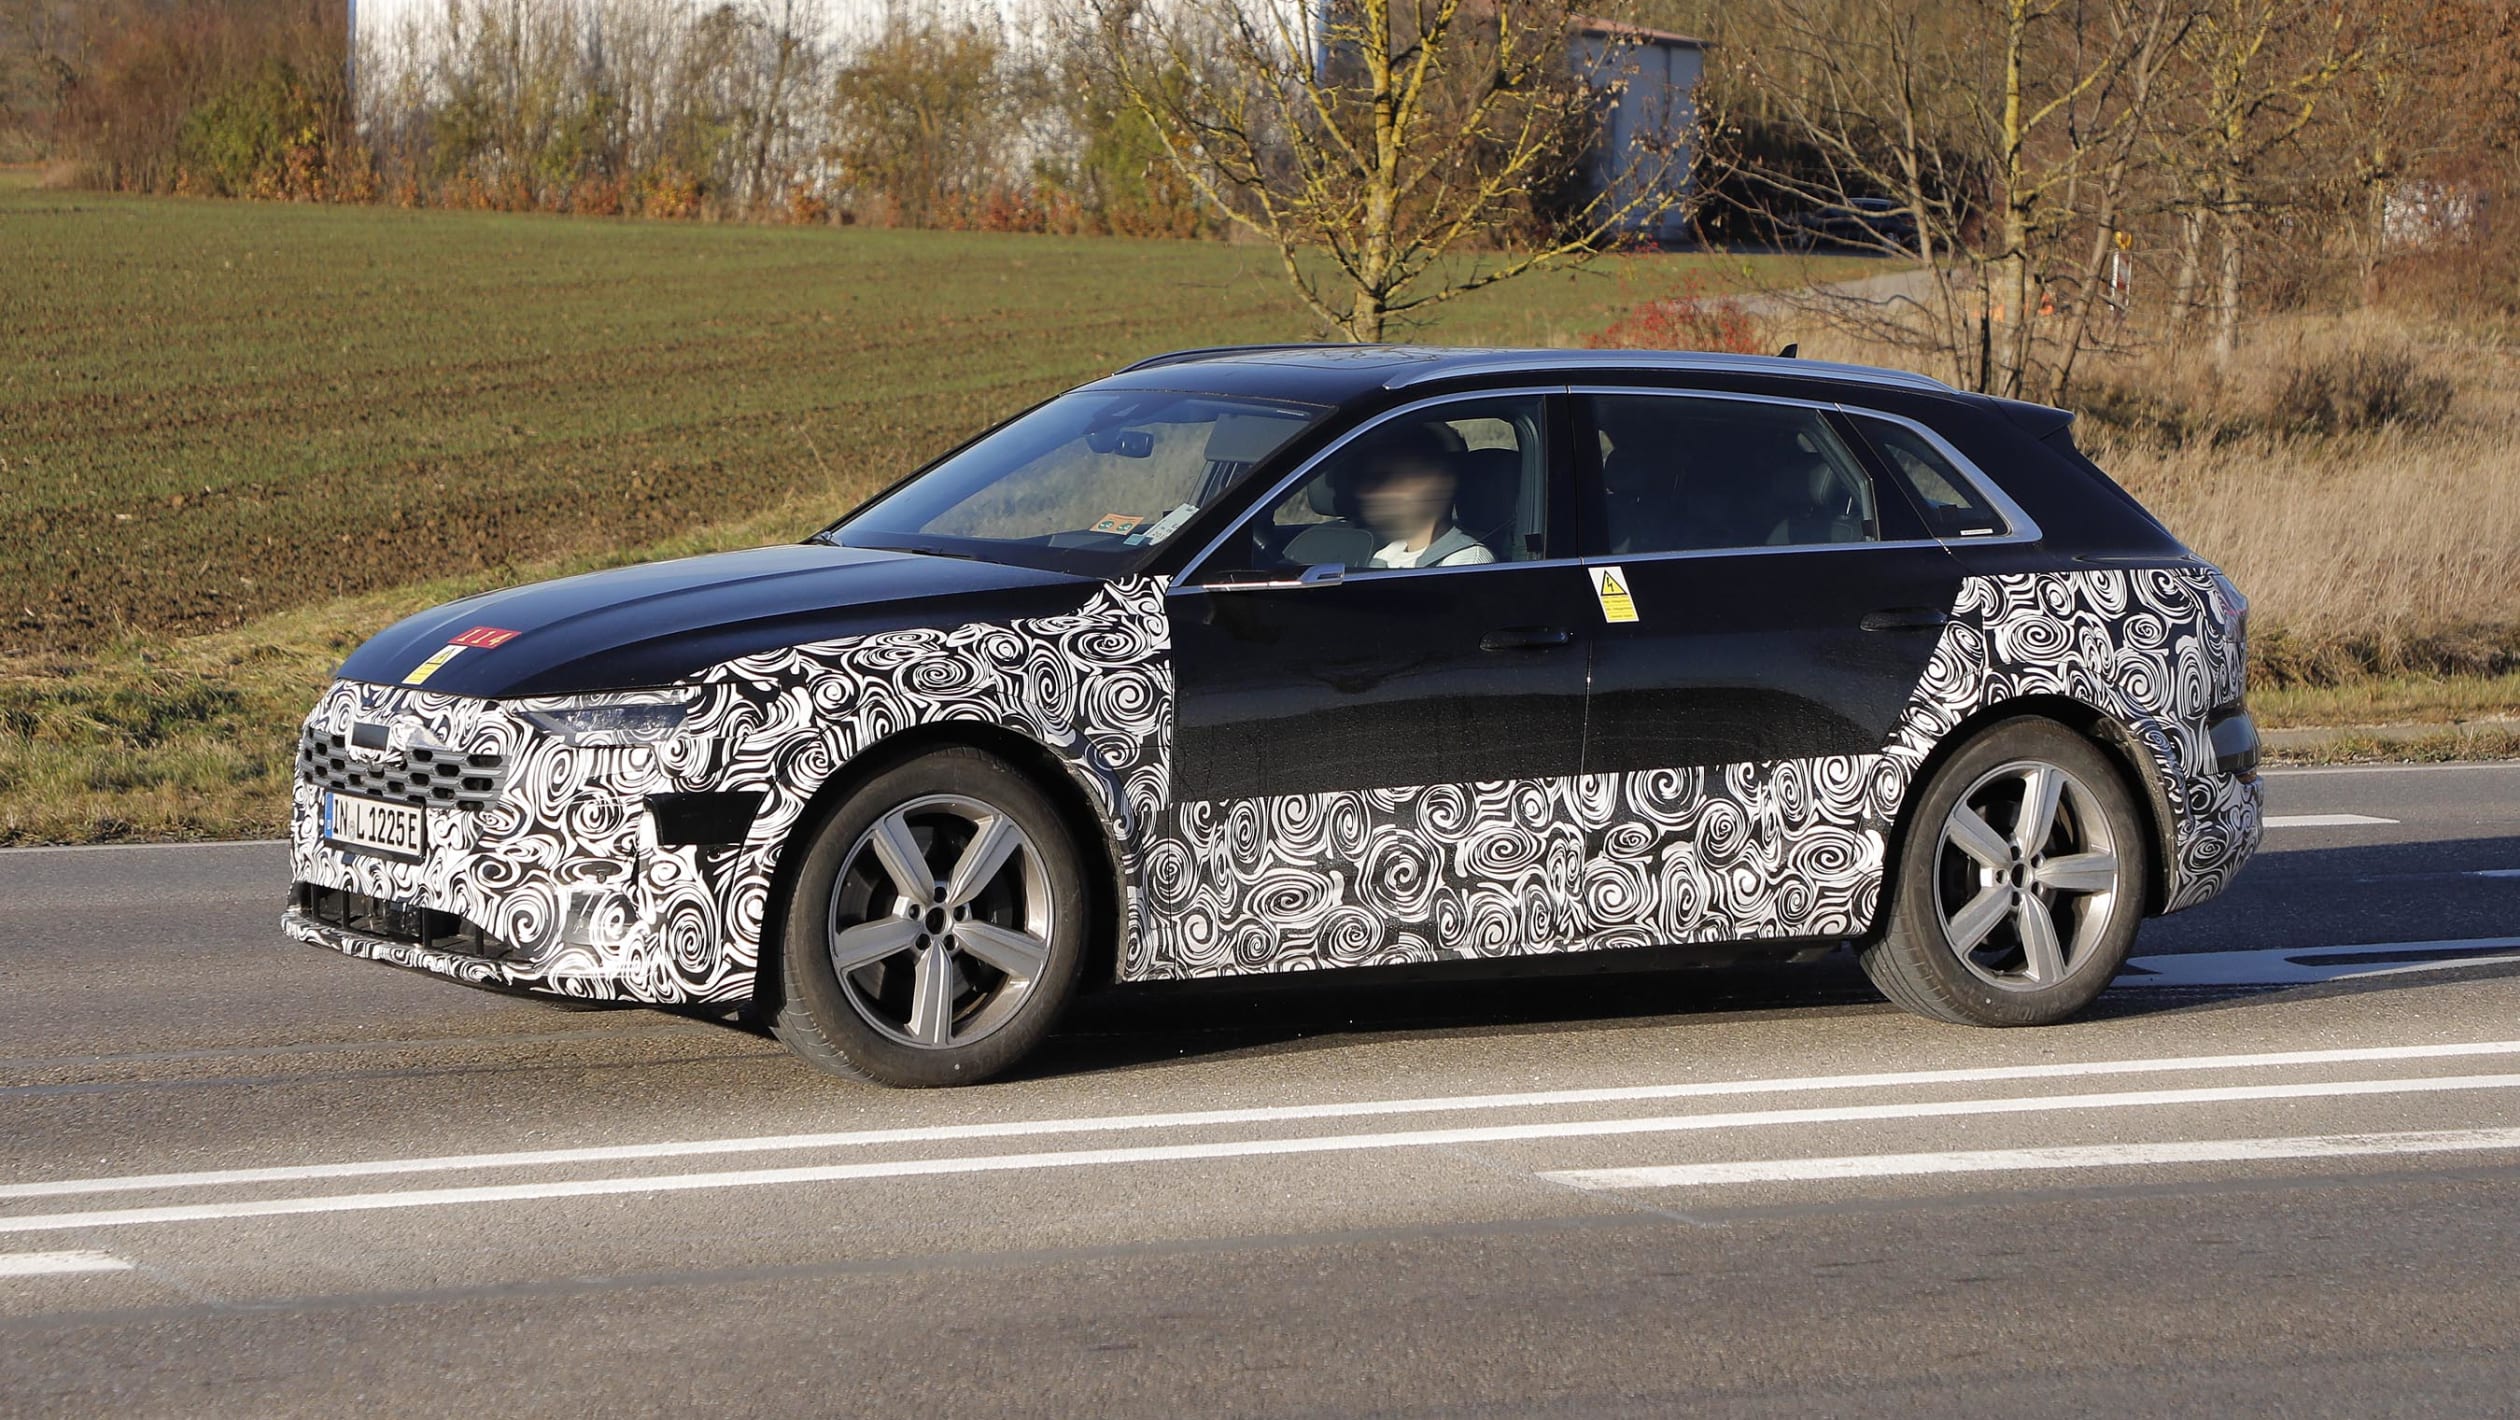 Nowa wersja modelu Audi E-TronD, tak prezentuje się zakamuflowana na zdjęciach. Co o nim wiemy?